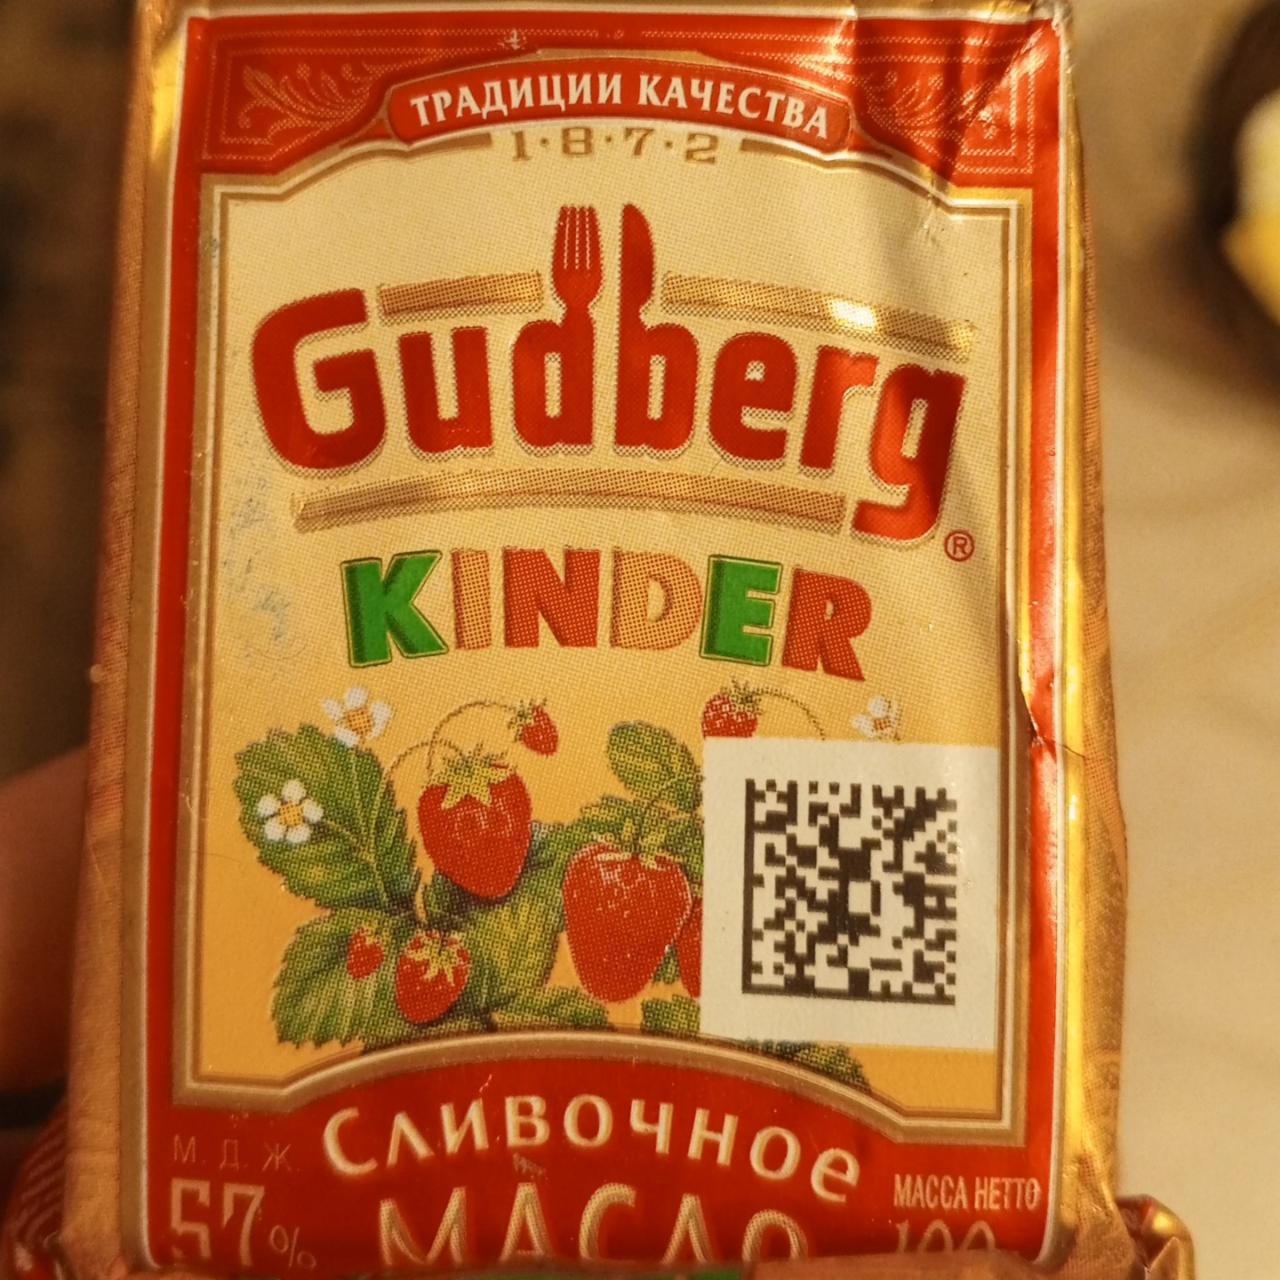 Фото - Сливочное масло с земляникой Gudberg kinder